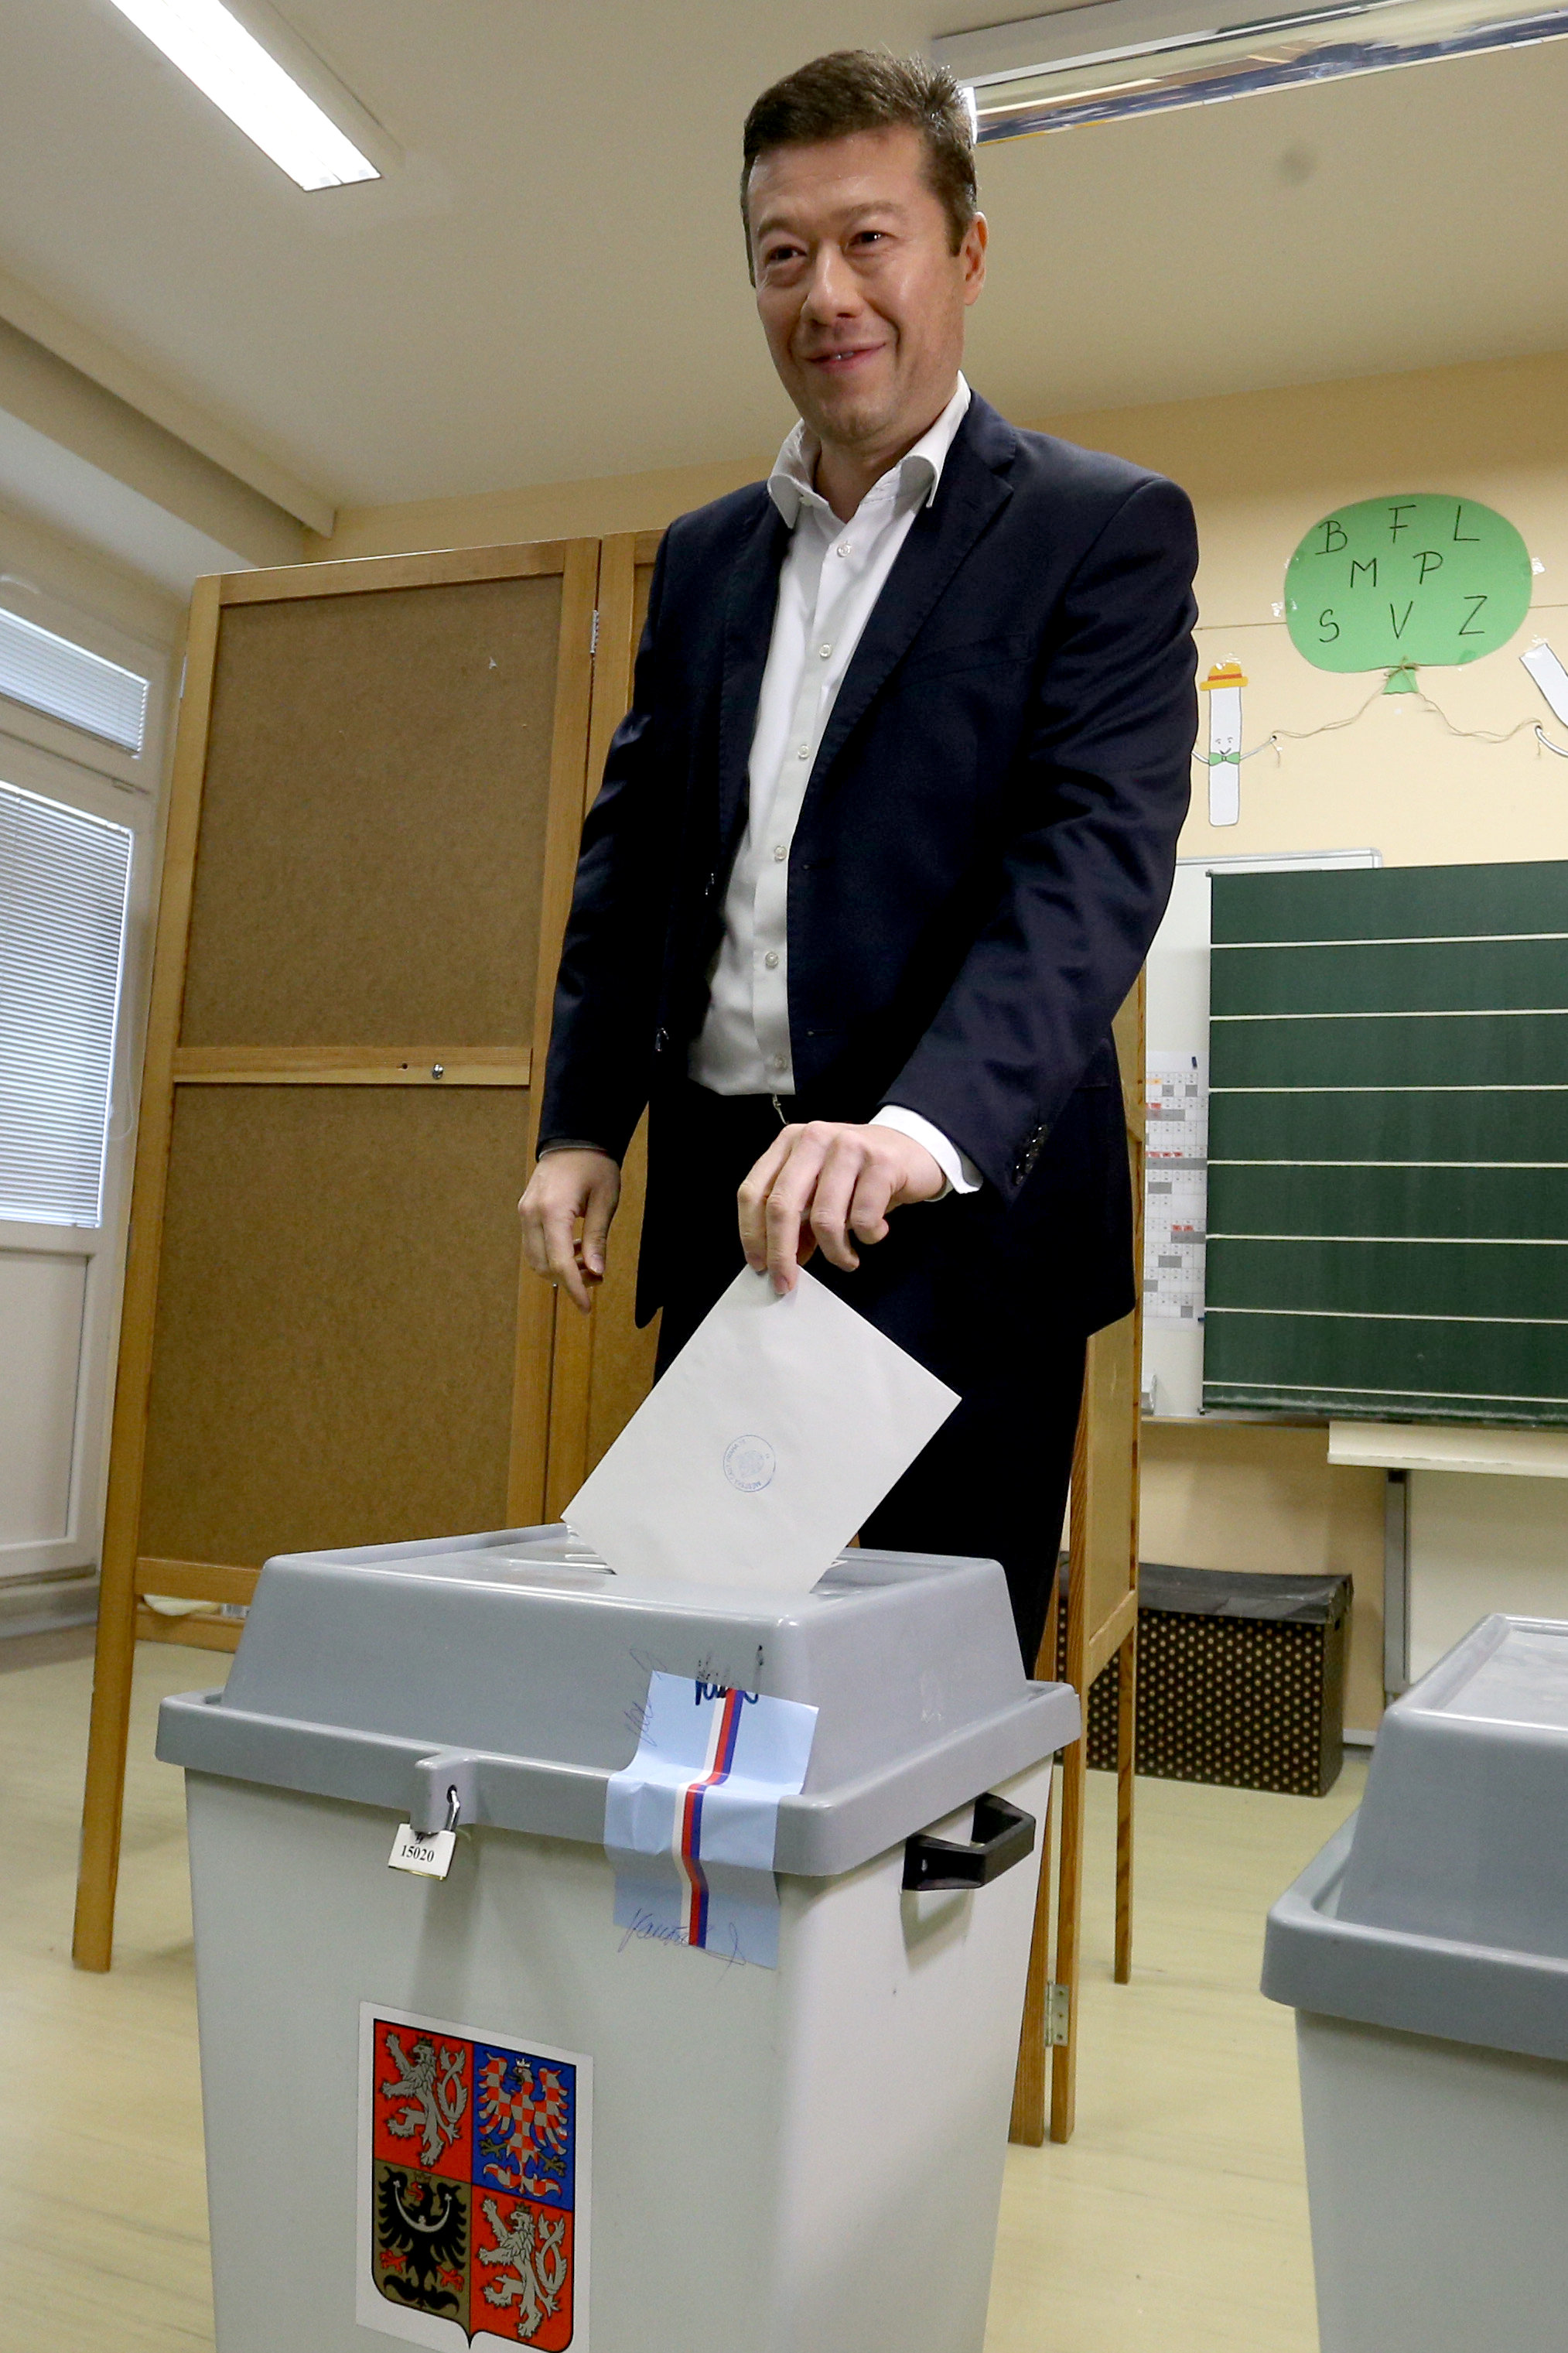 زعيم حزب الحرية والديمقراطية المباشرة يضع ورقة الاقتراع فى صندوق الانتخابات